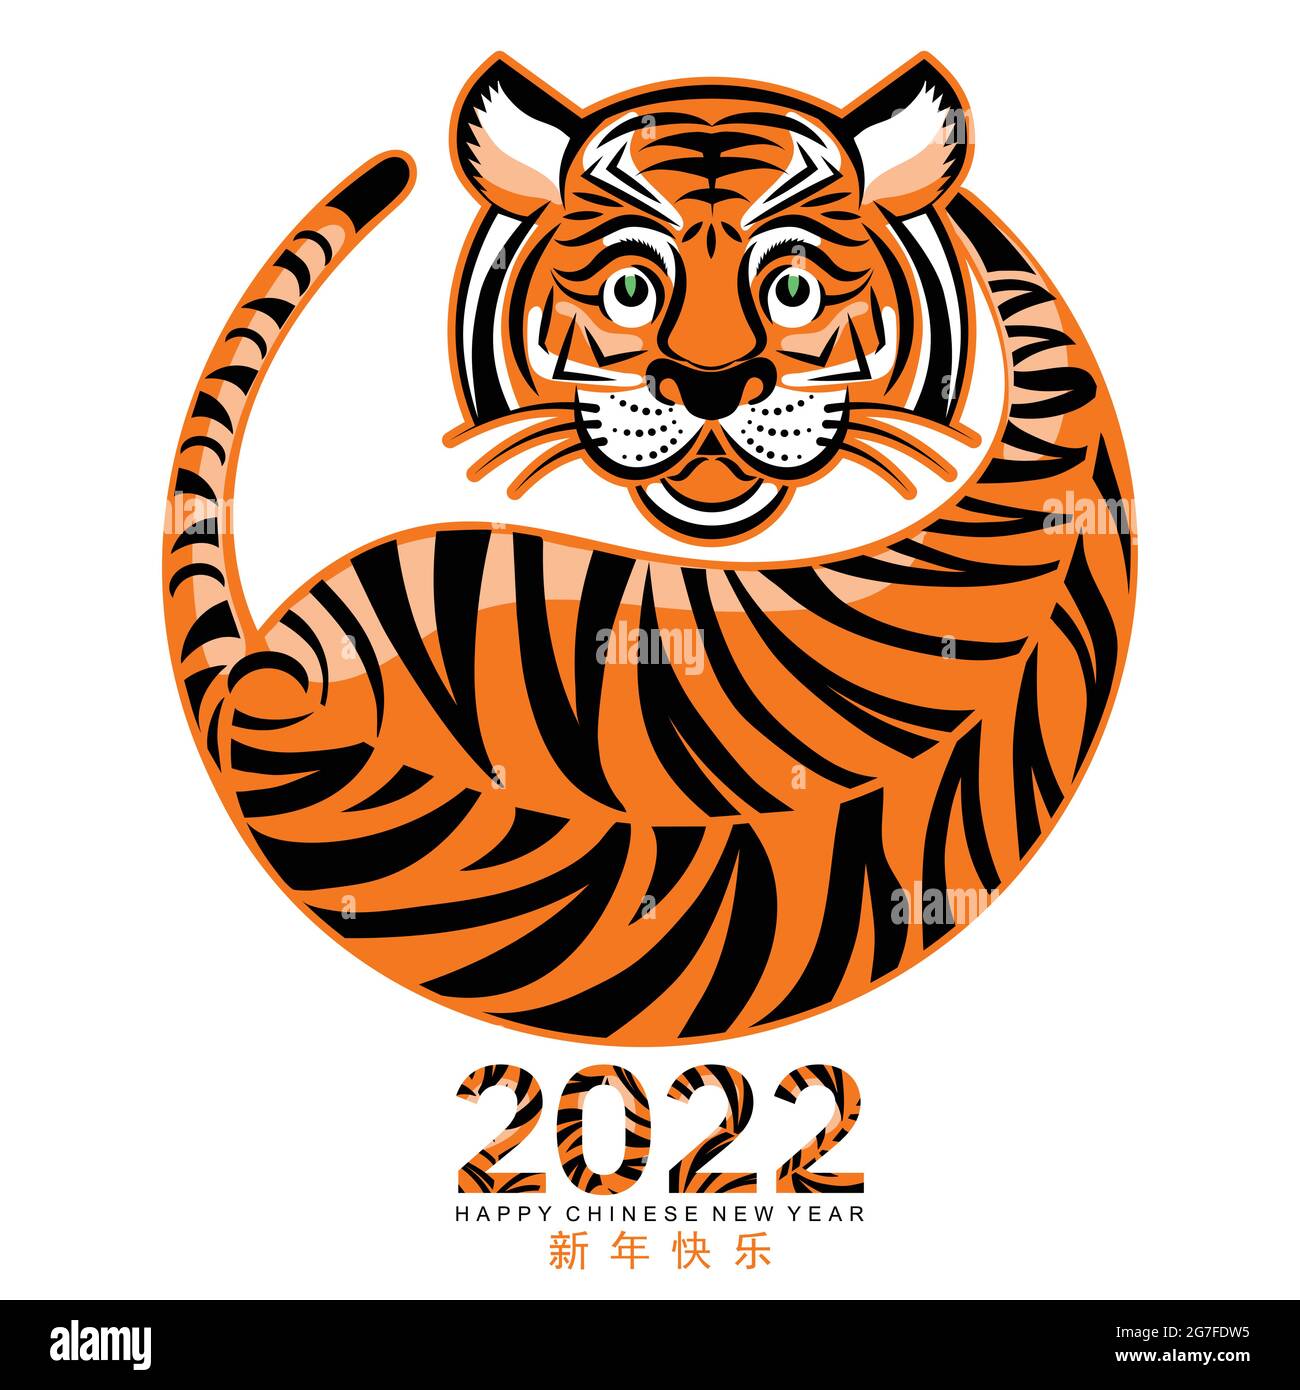 2022 Lunar New Year Animal